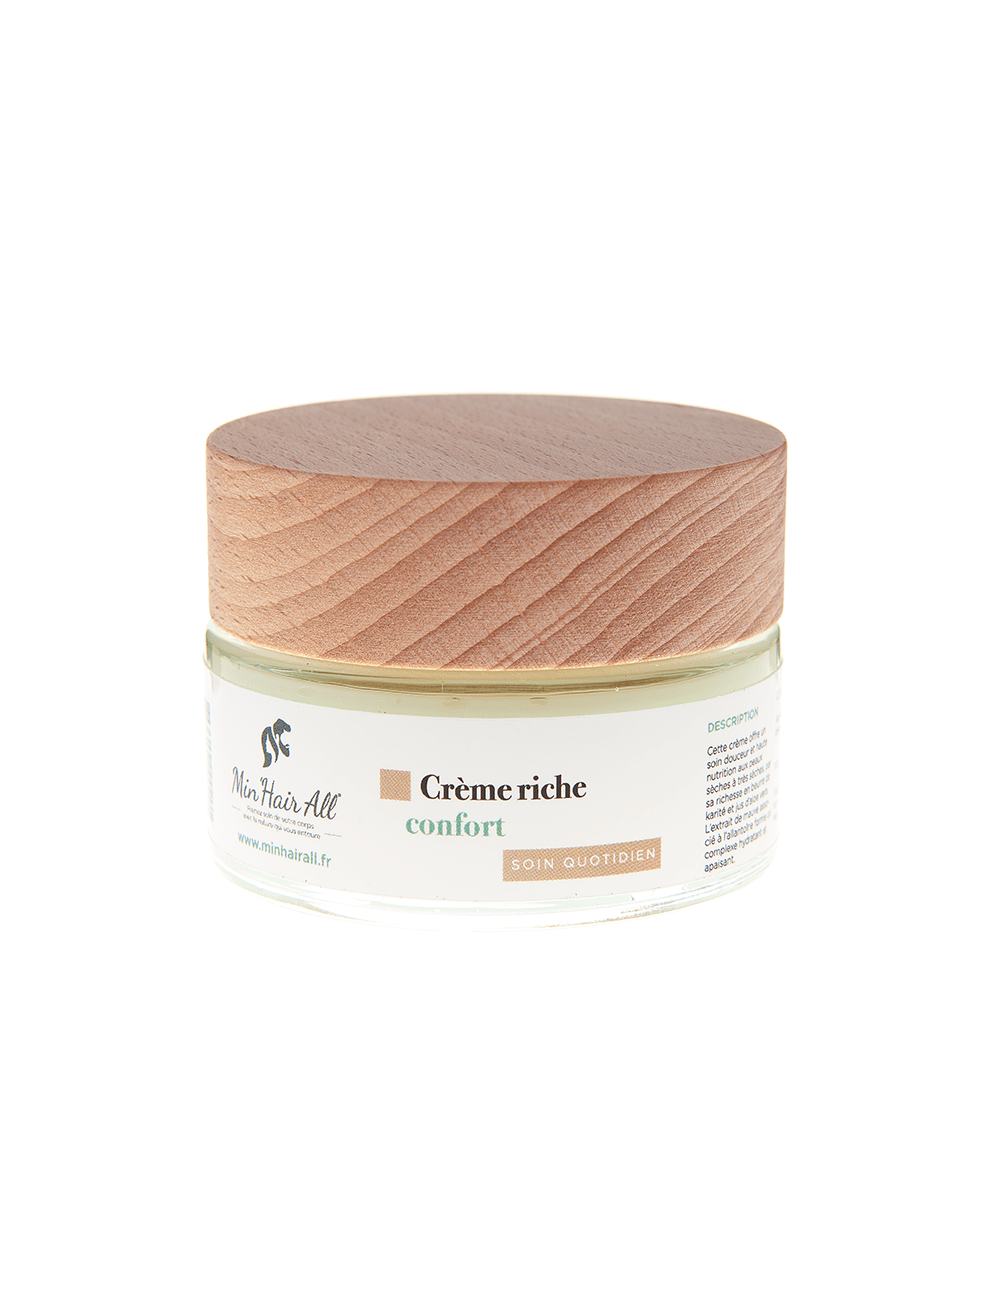 Pot de crème riche confort Min'Hair All pour le traitement des peaux sèches à très sèches. 100% d'actifs naturels